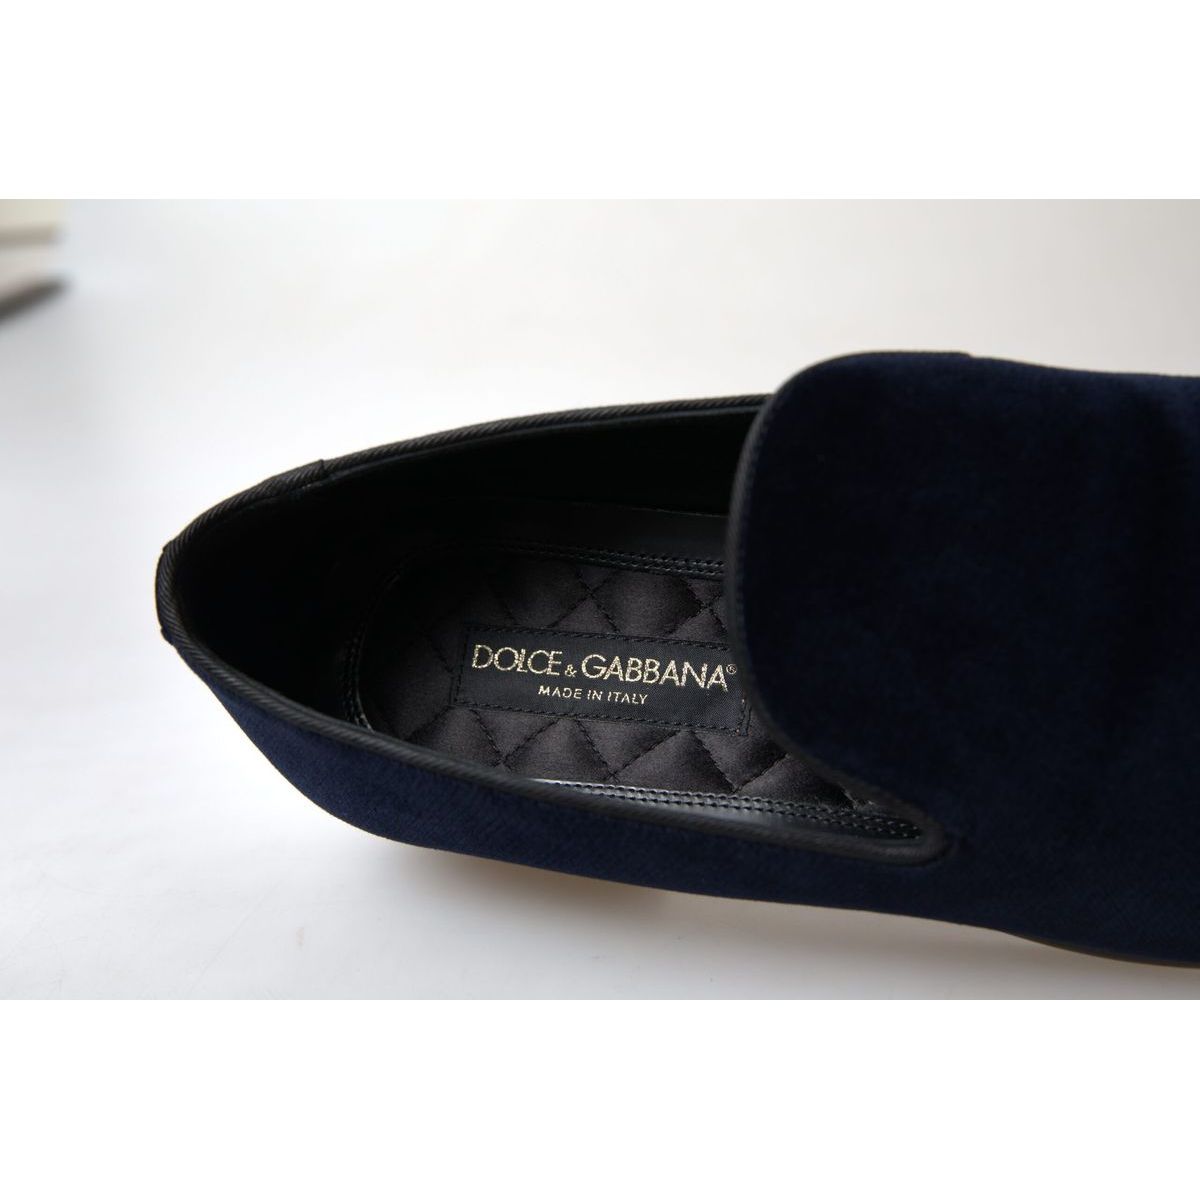 Dolce & Gabbana Elegant Blue Velvet Loafers for Men blue-velvet-loafers-formal-shoes 465A8171-scaled-3f39b537-7e0_77bb0f24-398e-4d11-b087-e997588d661a.jpg